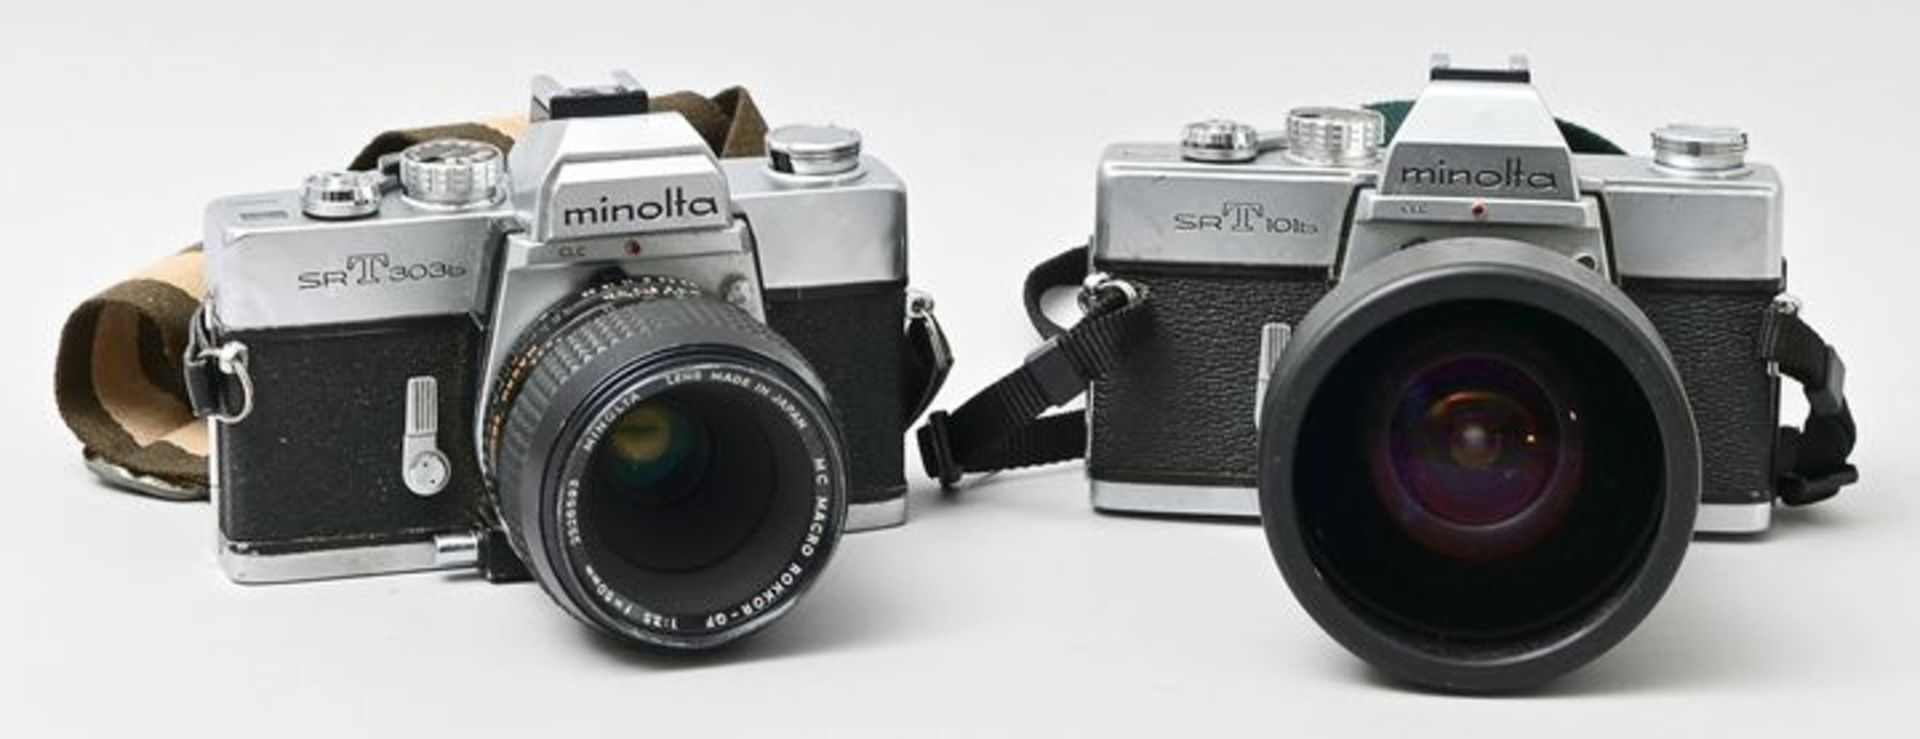 Zwei Minolta Kameras/ two cameras